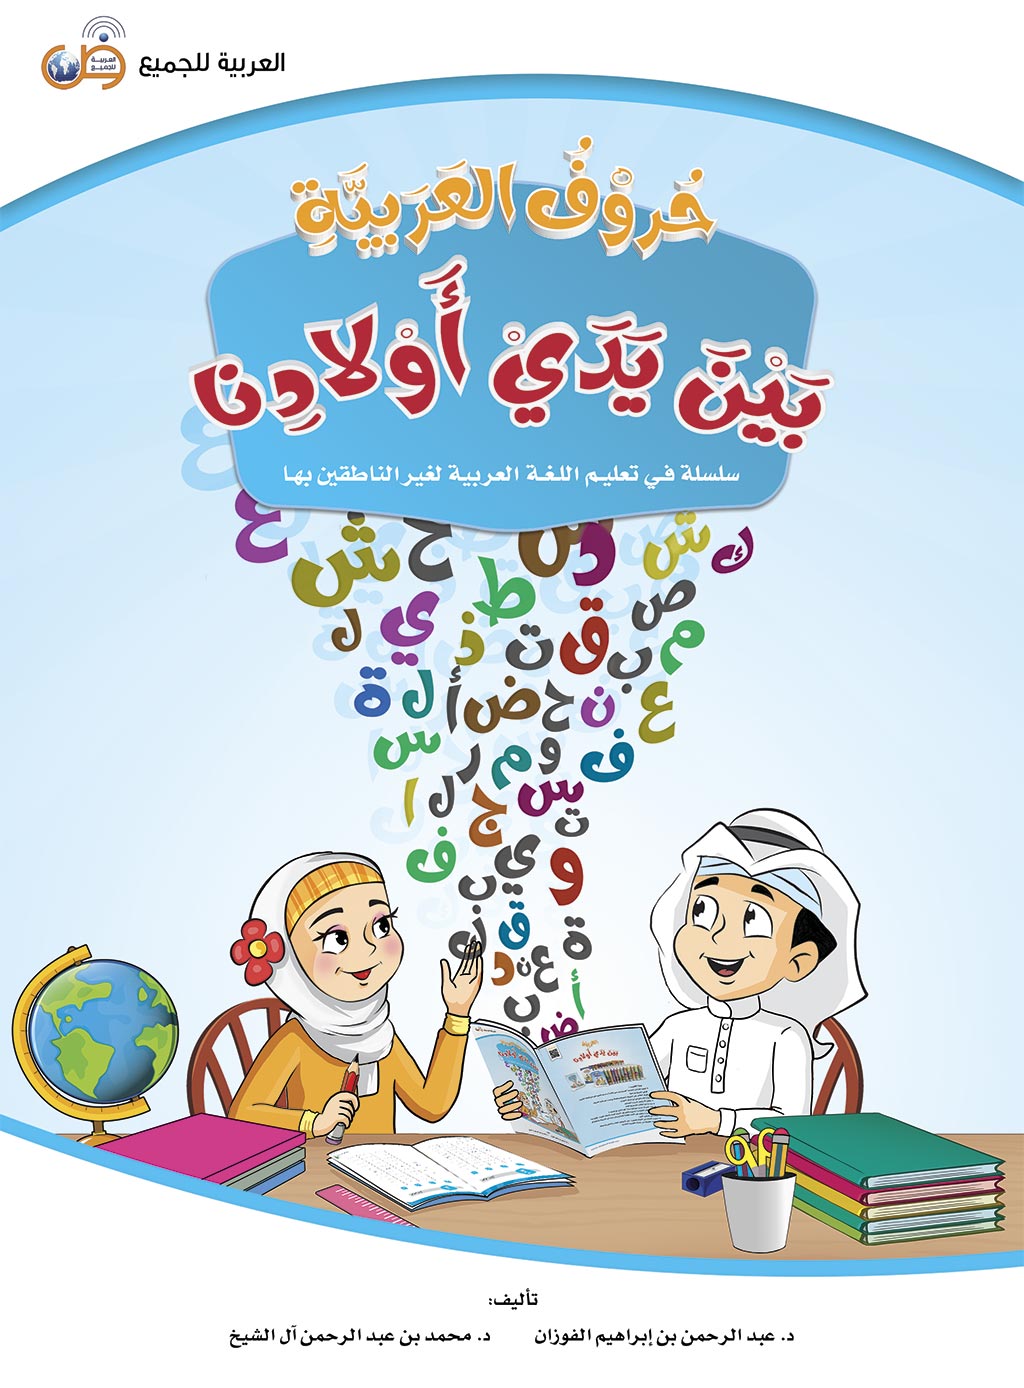 Прописи - Азбука арабского языка для детей - Аль арабия байна ядай авлядина